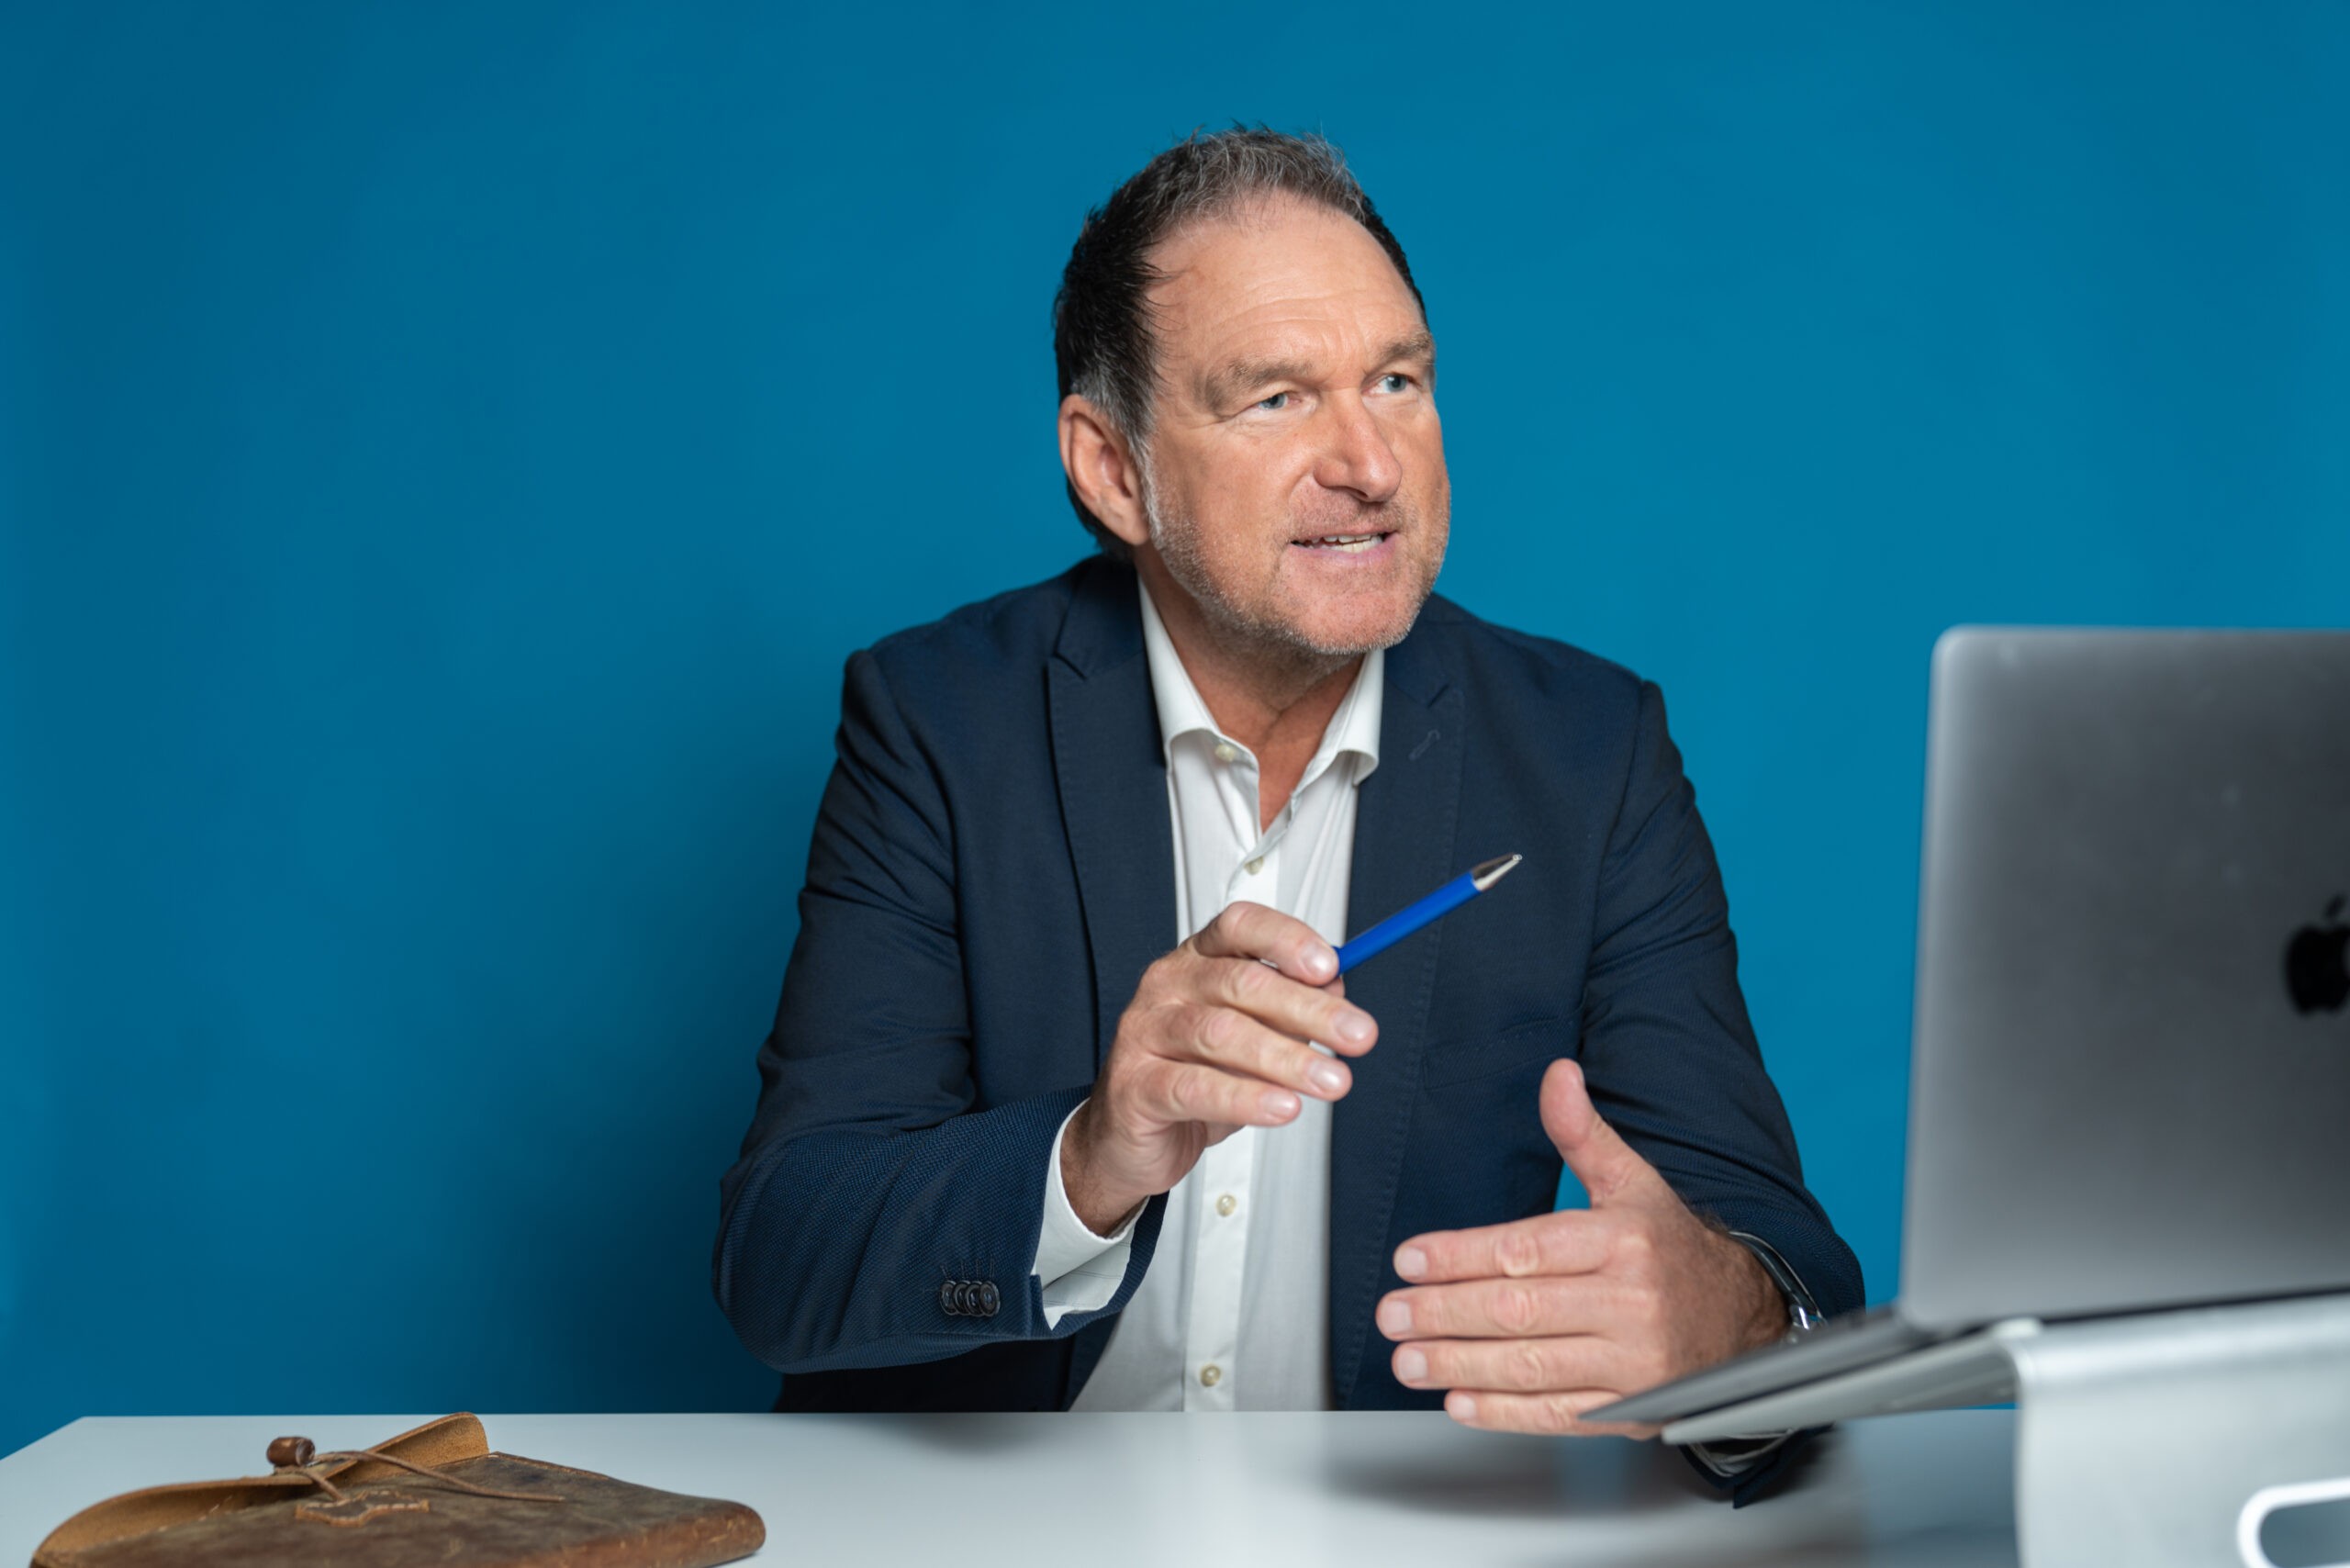 Thomas Gerres, Konferenz-Master, Video Coach sitzt vor einem MacBook und hält einen blauen Kugelschreiber in der Hand